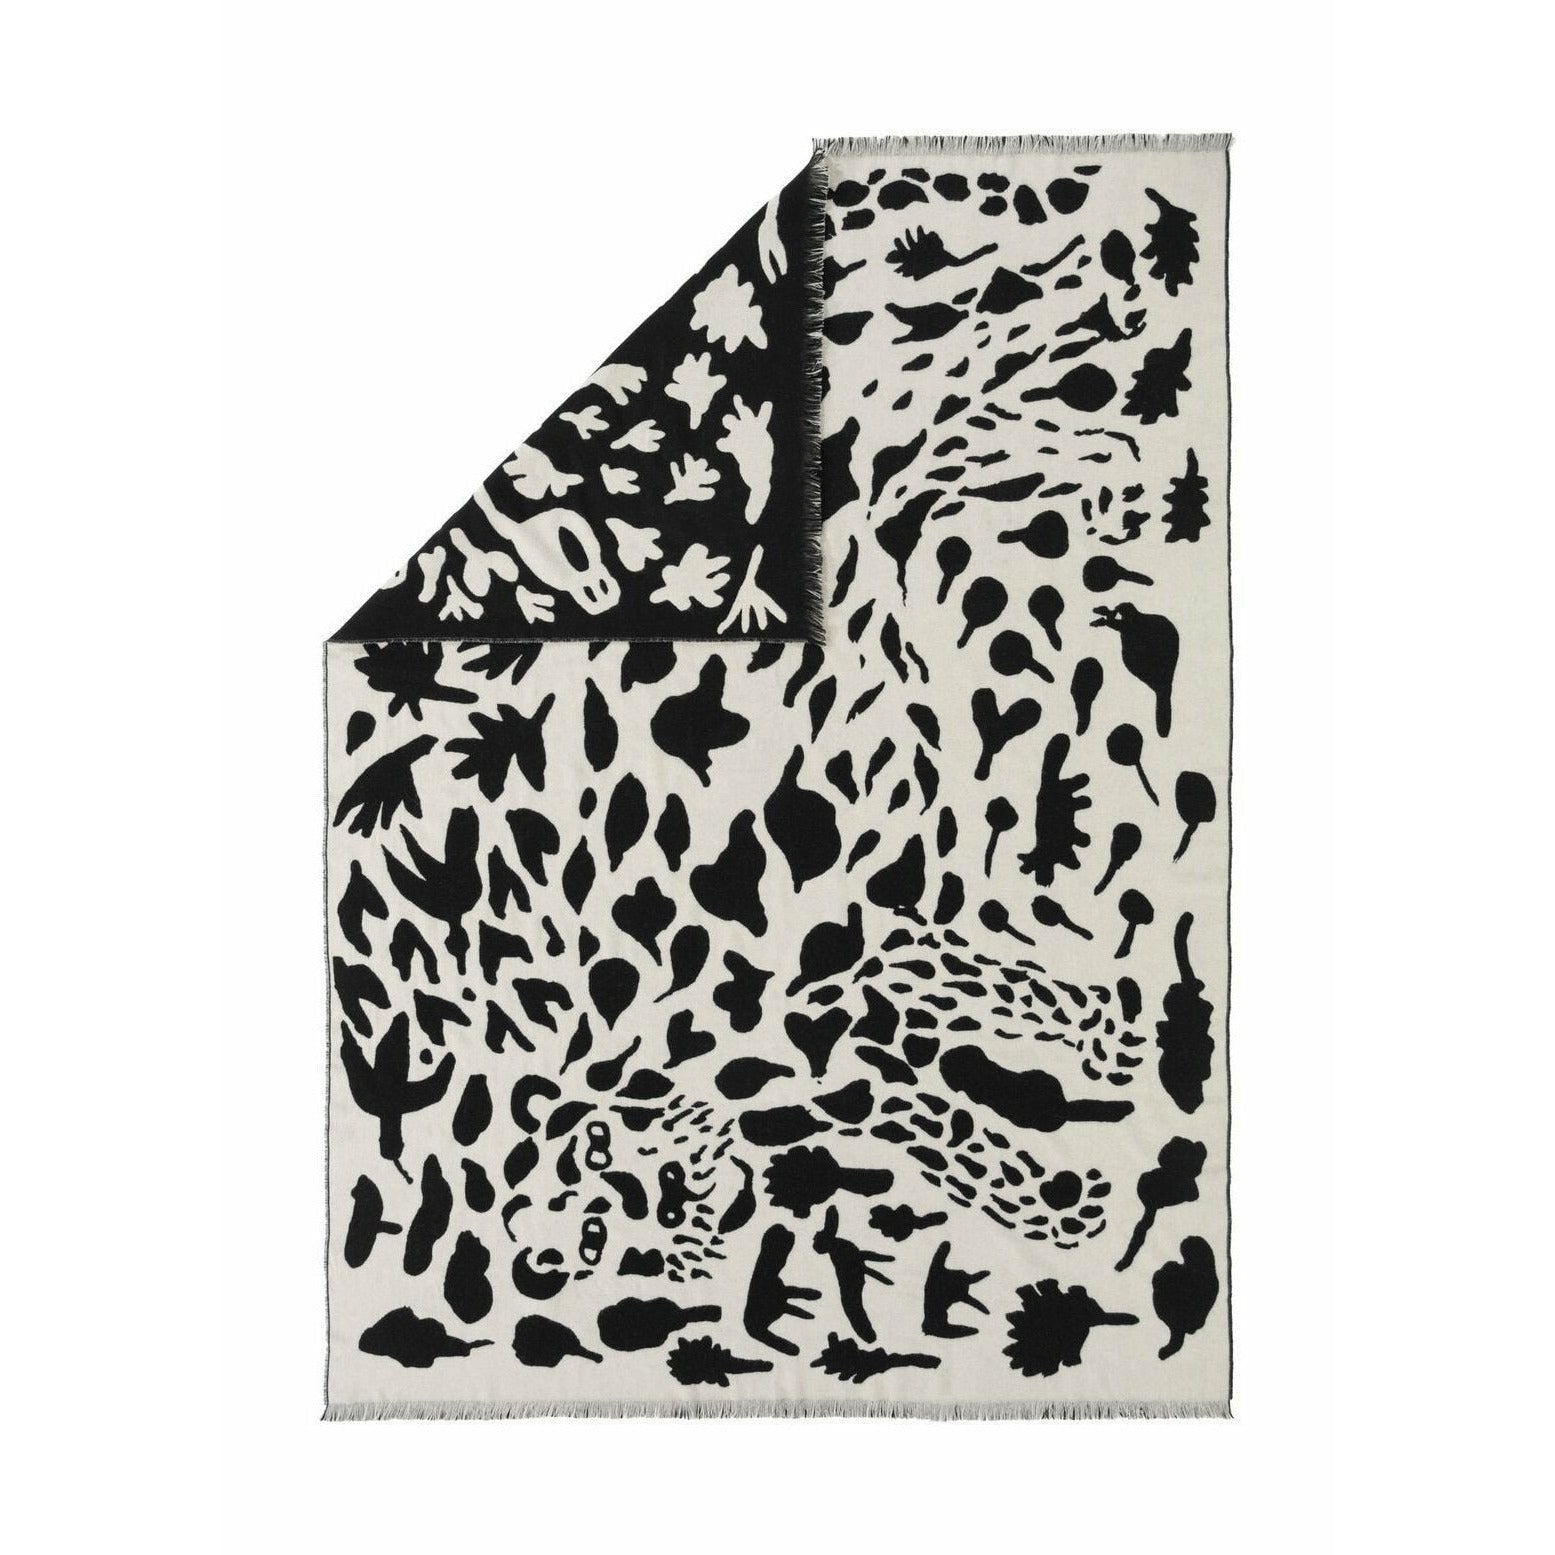 Iittala oiva toikka manta cheetah negro, 180x130cm